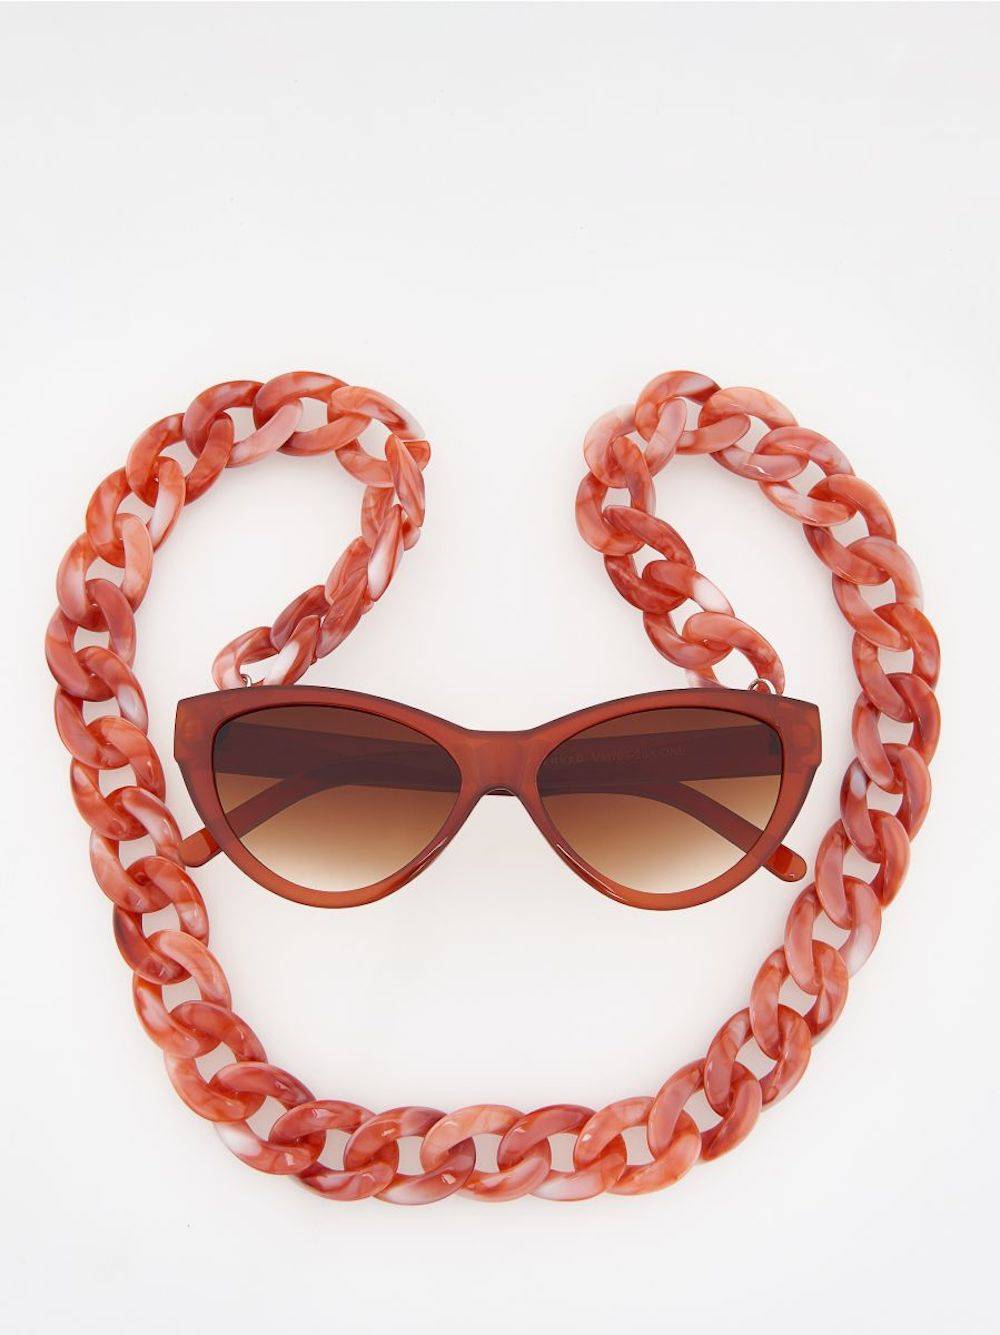  Okulary przeciwsłoneczne z szylkretowym sznurkiem, 69,99 zł (Fot. materiały prasowe)